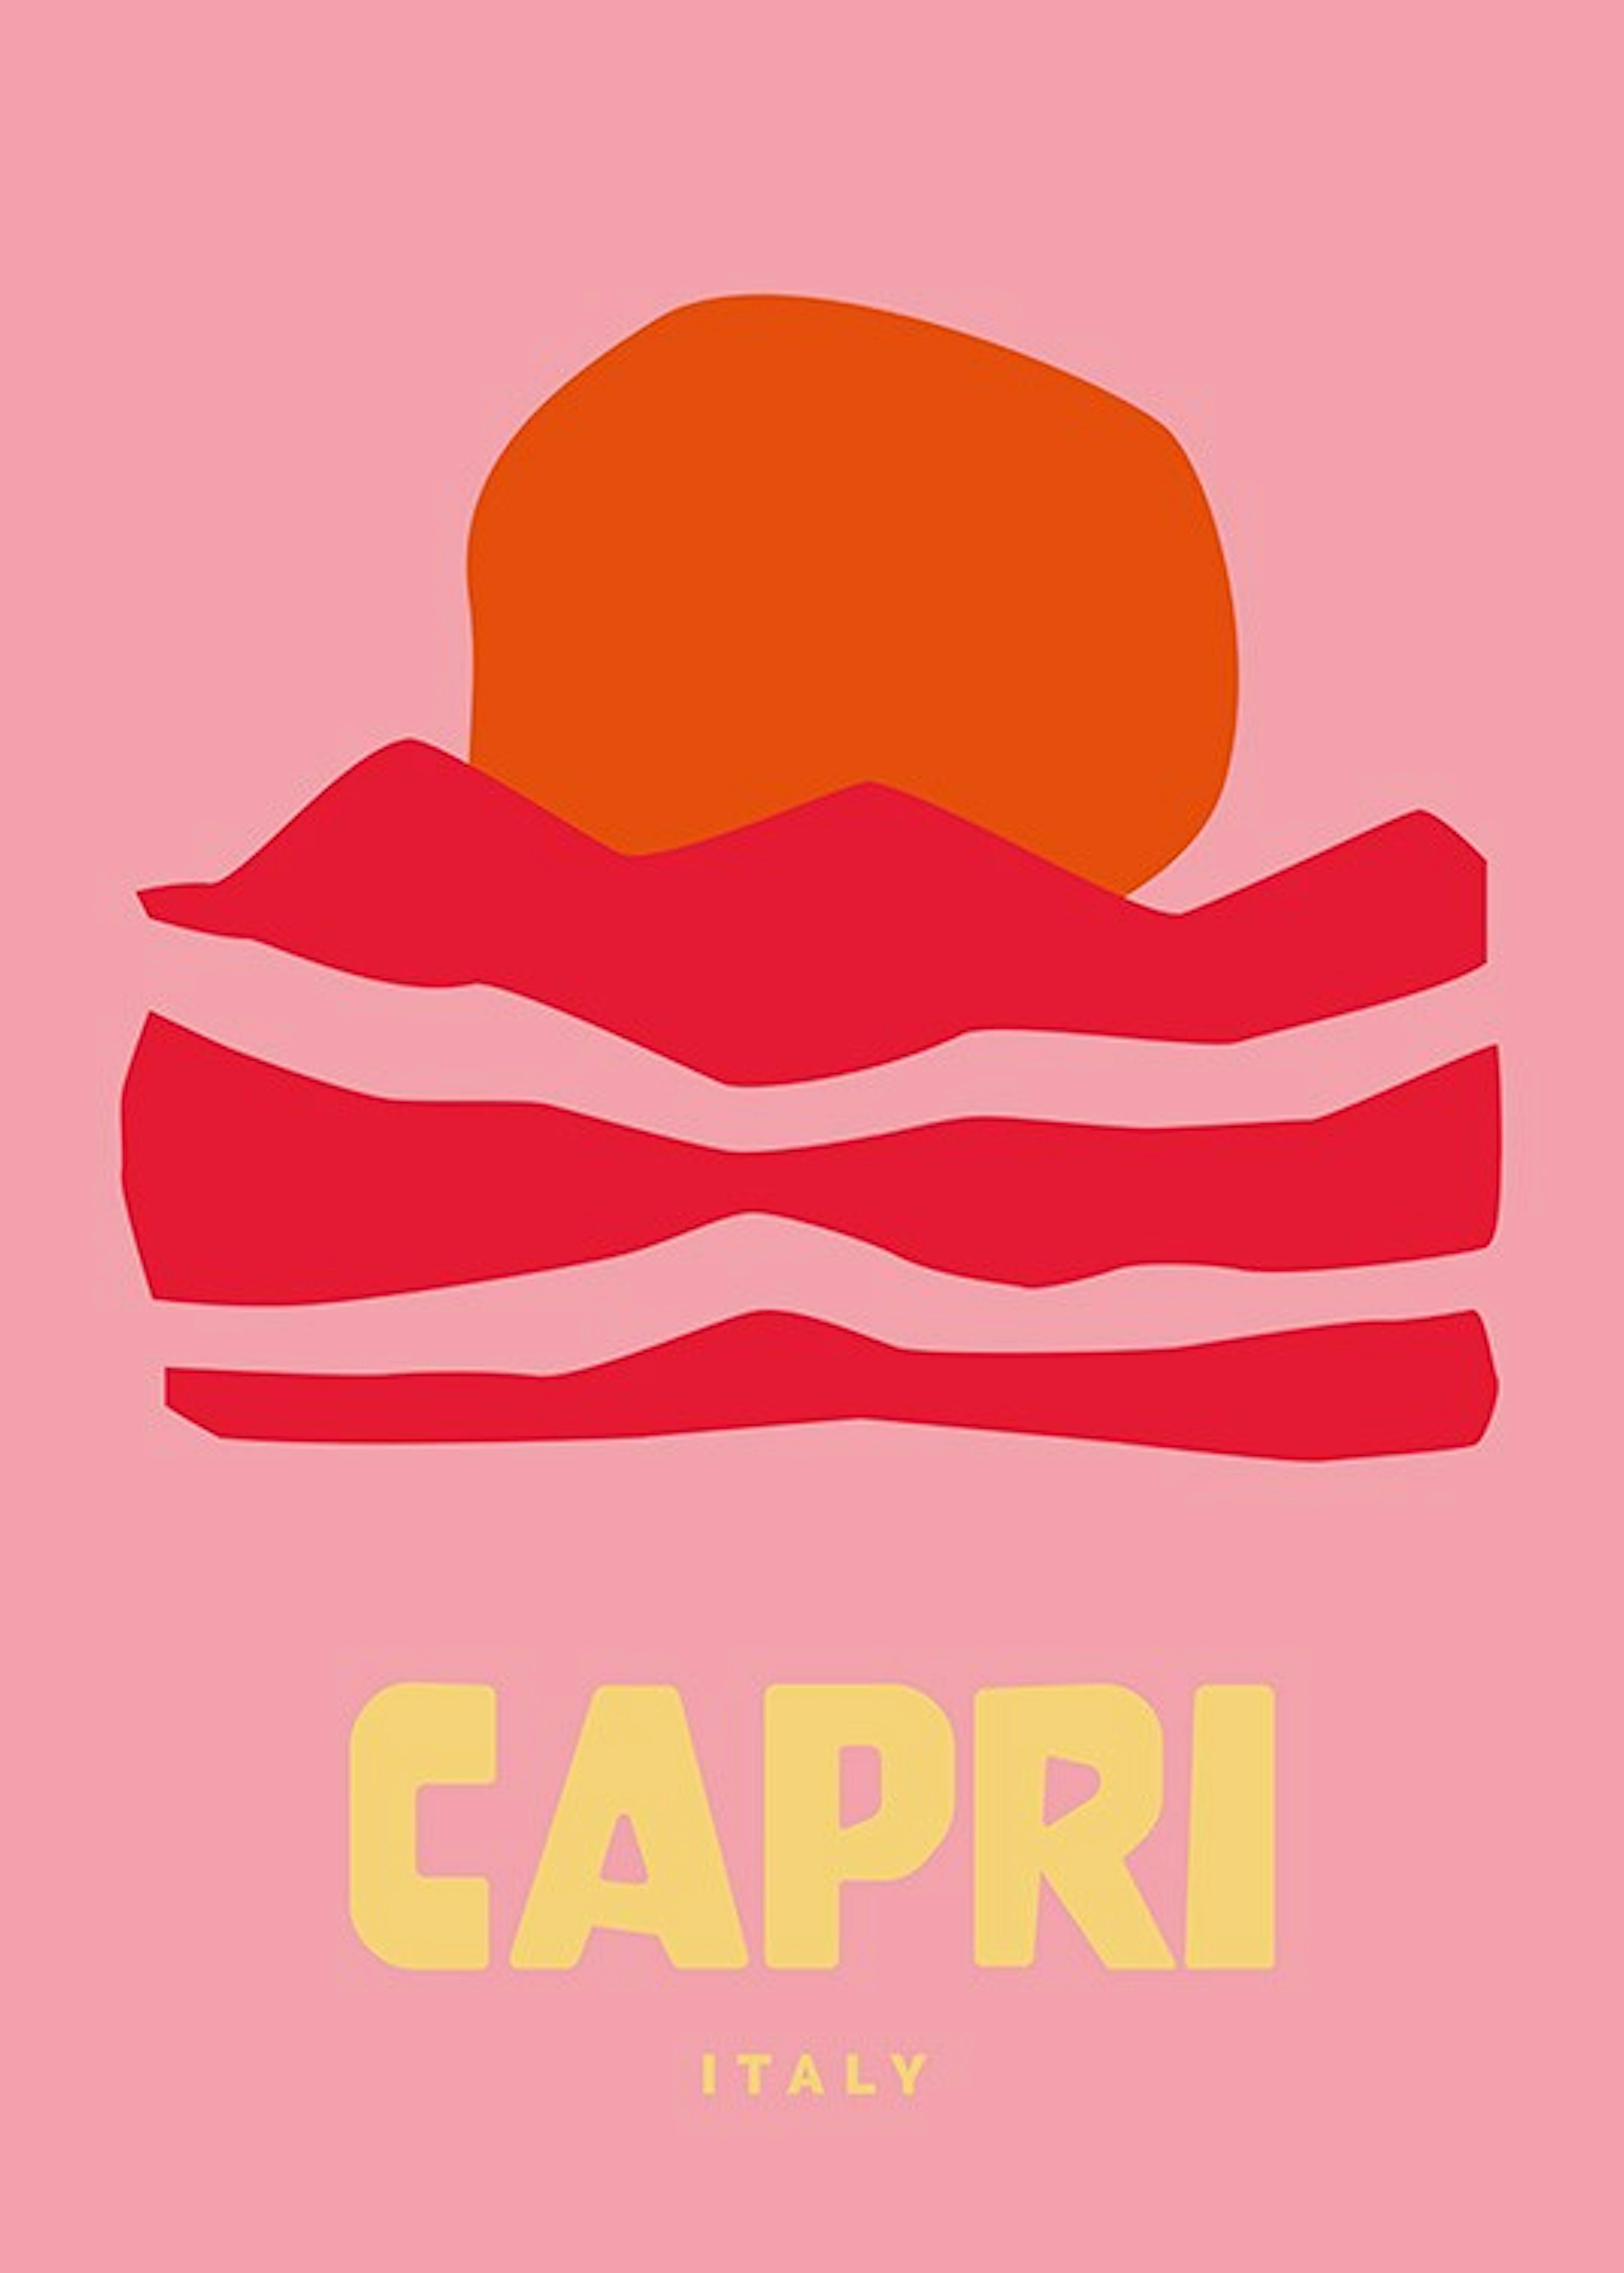 Graphic Capri Plakat 0